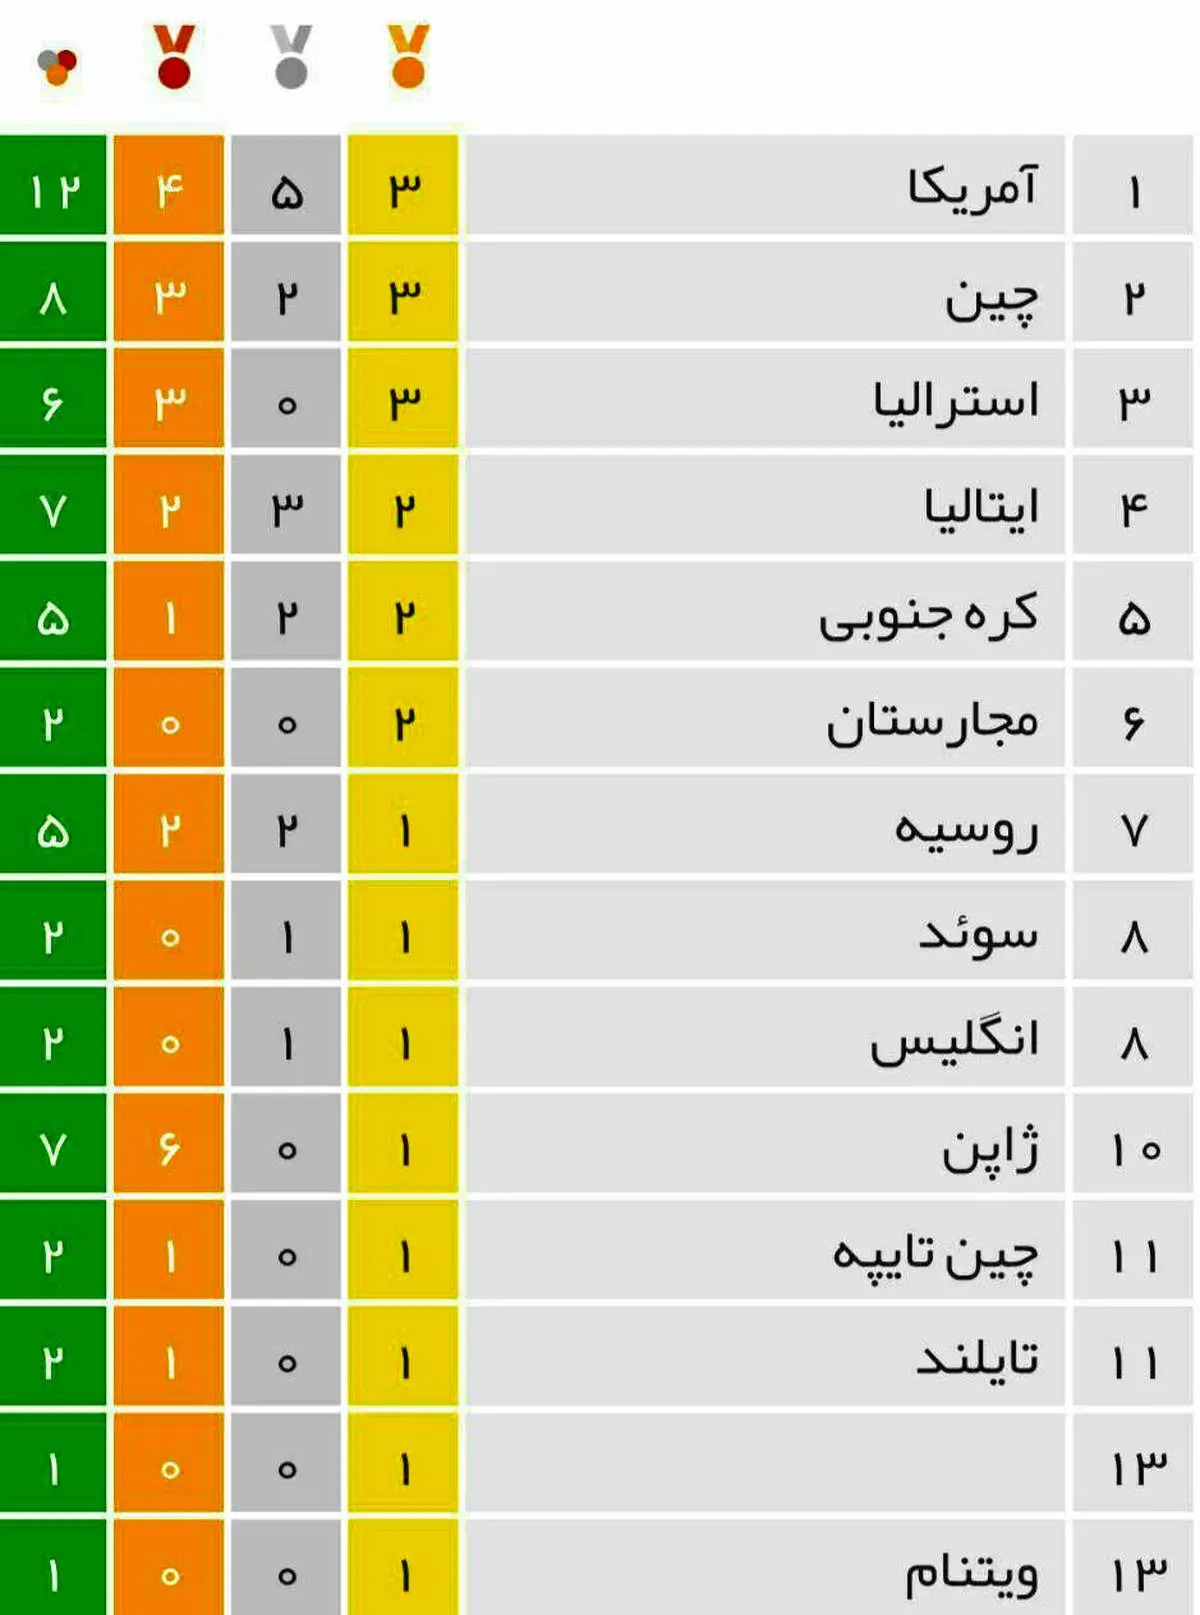 جدول توزیع مدال های المپیک